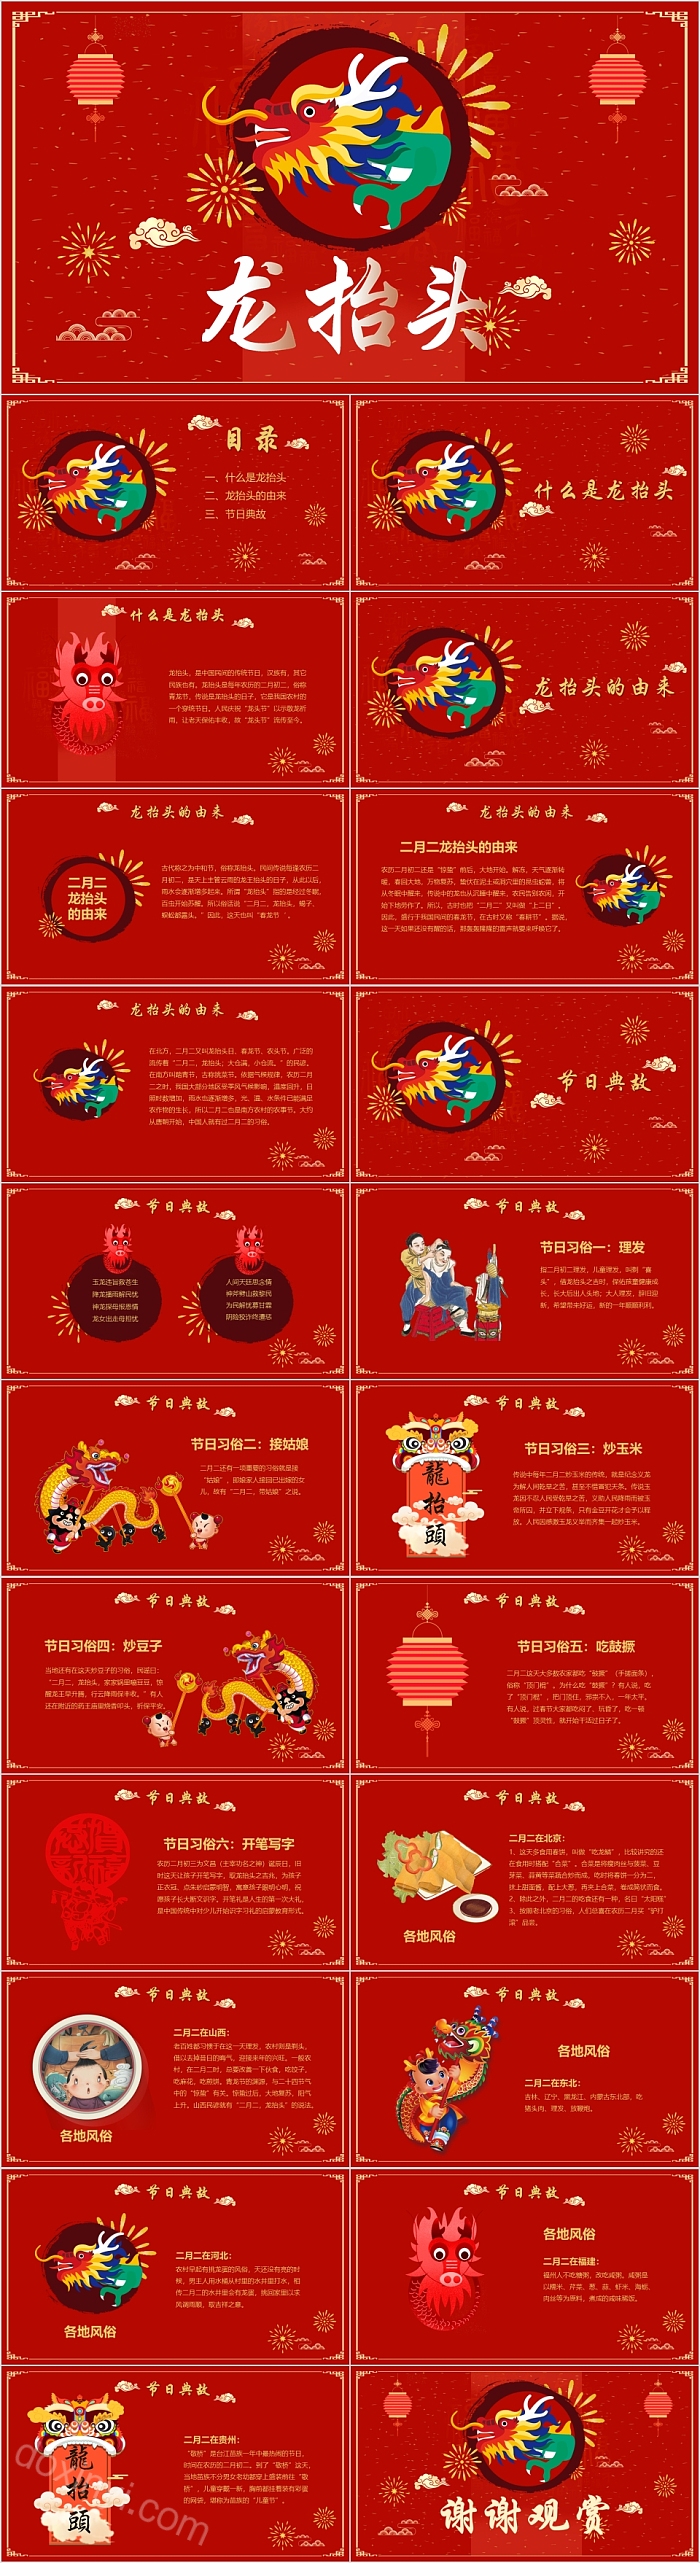 红色中国传统节日龙抬头主题